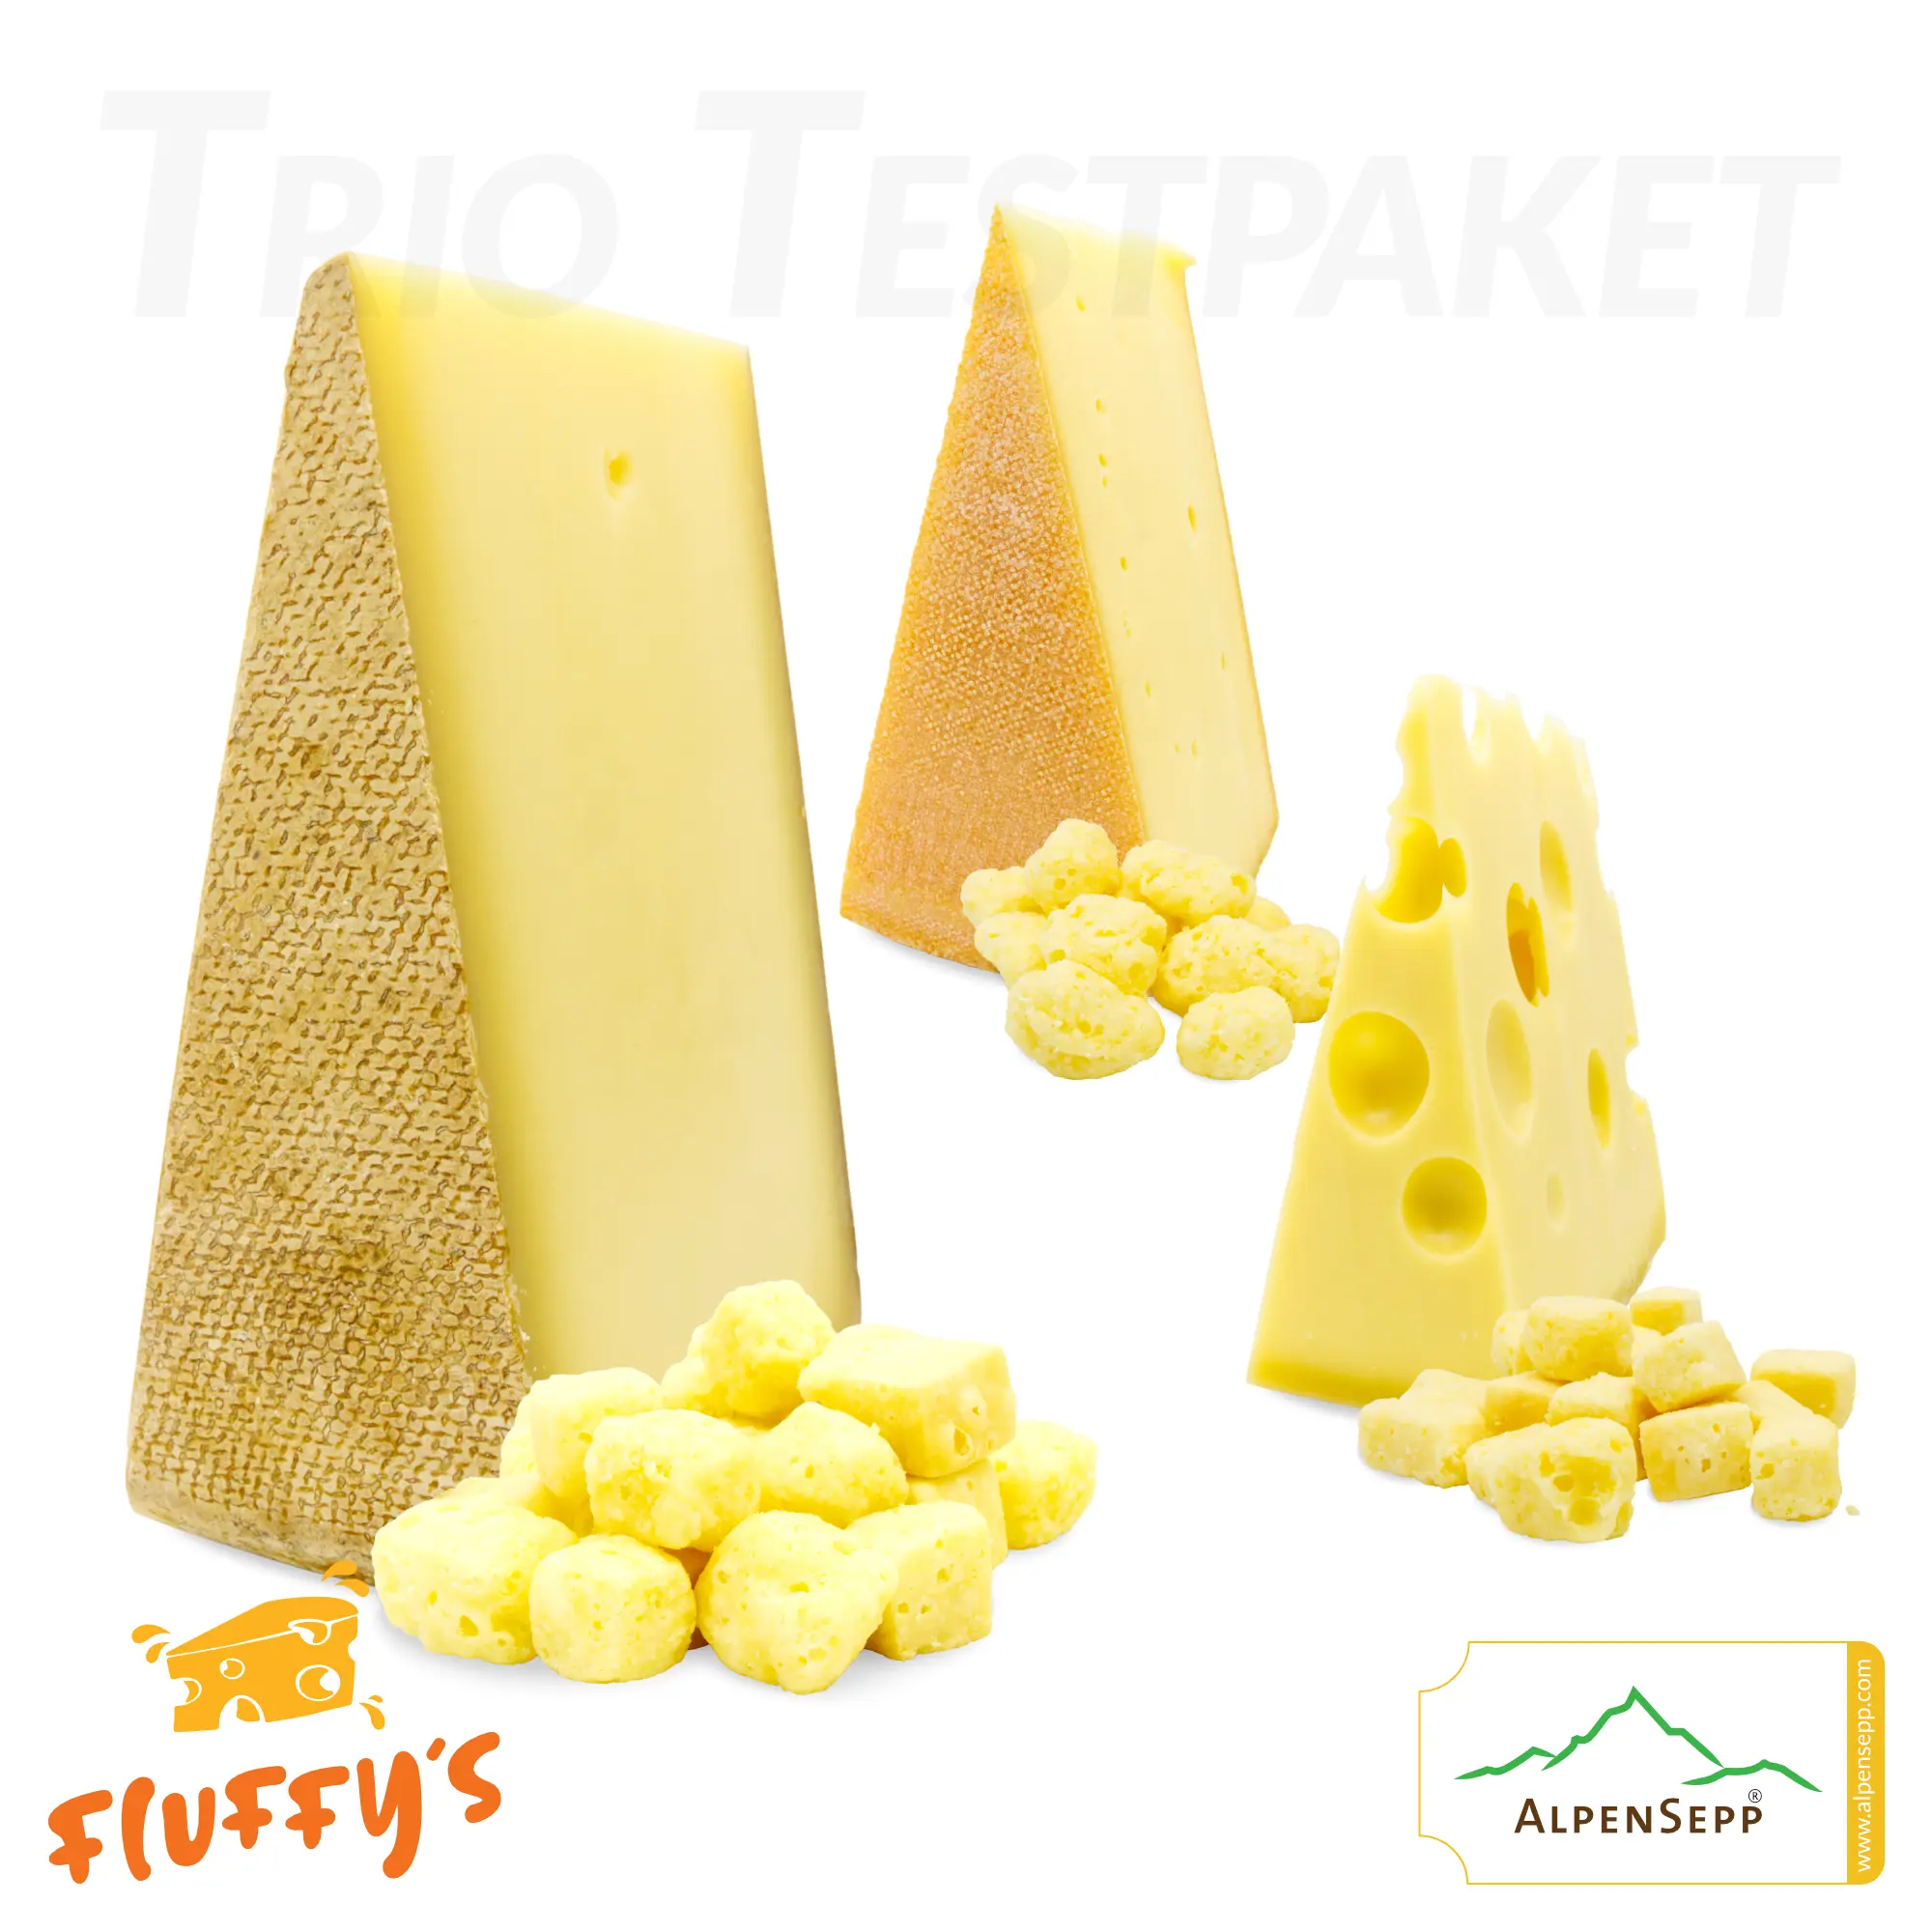 'FLUFFYs TRIO' Käse Snack | Exklusiver Produkttest | Bergkäse würzig, Senn Almkäse und Emmentaler | plus 3x Käsestück für den intensiven Vergleich